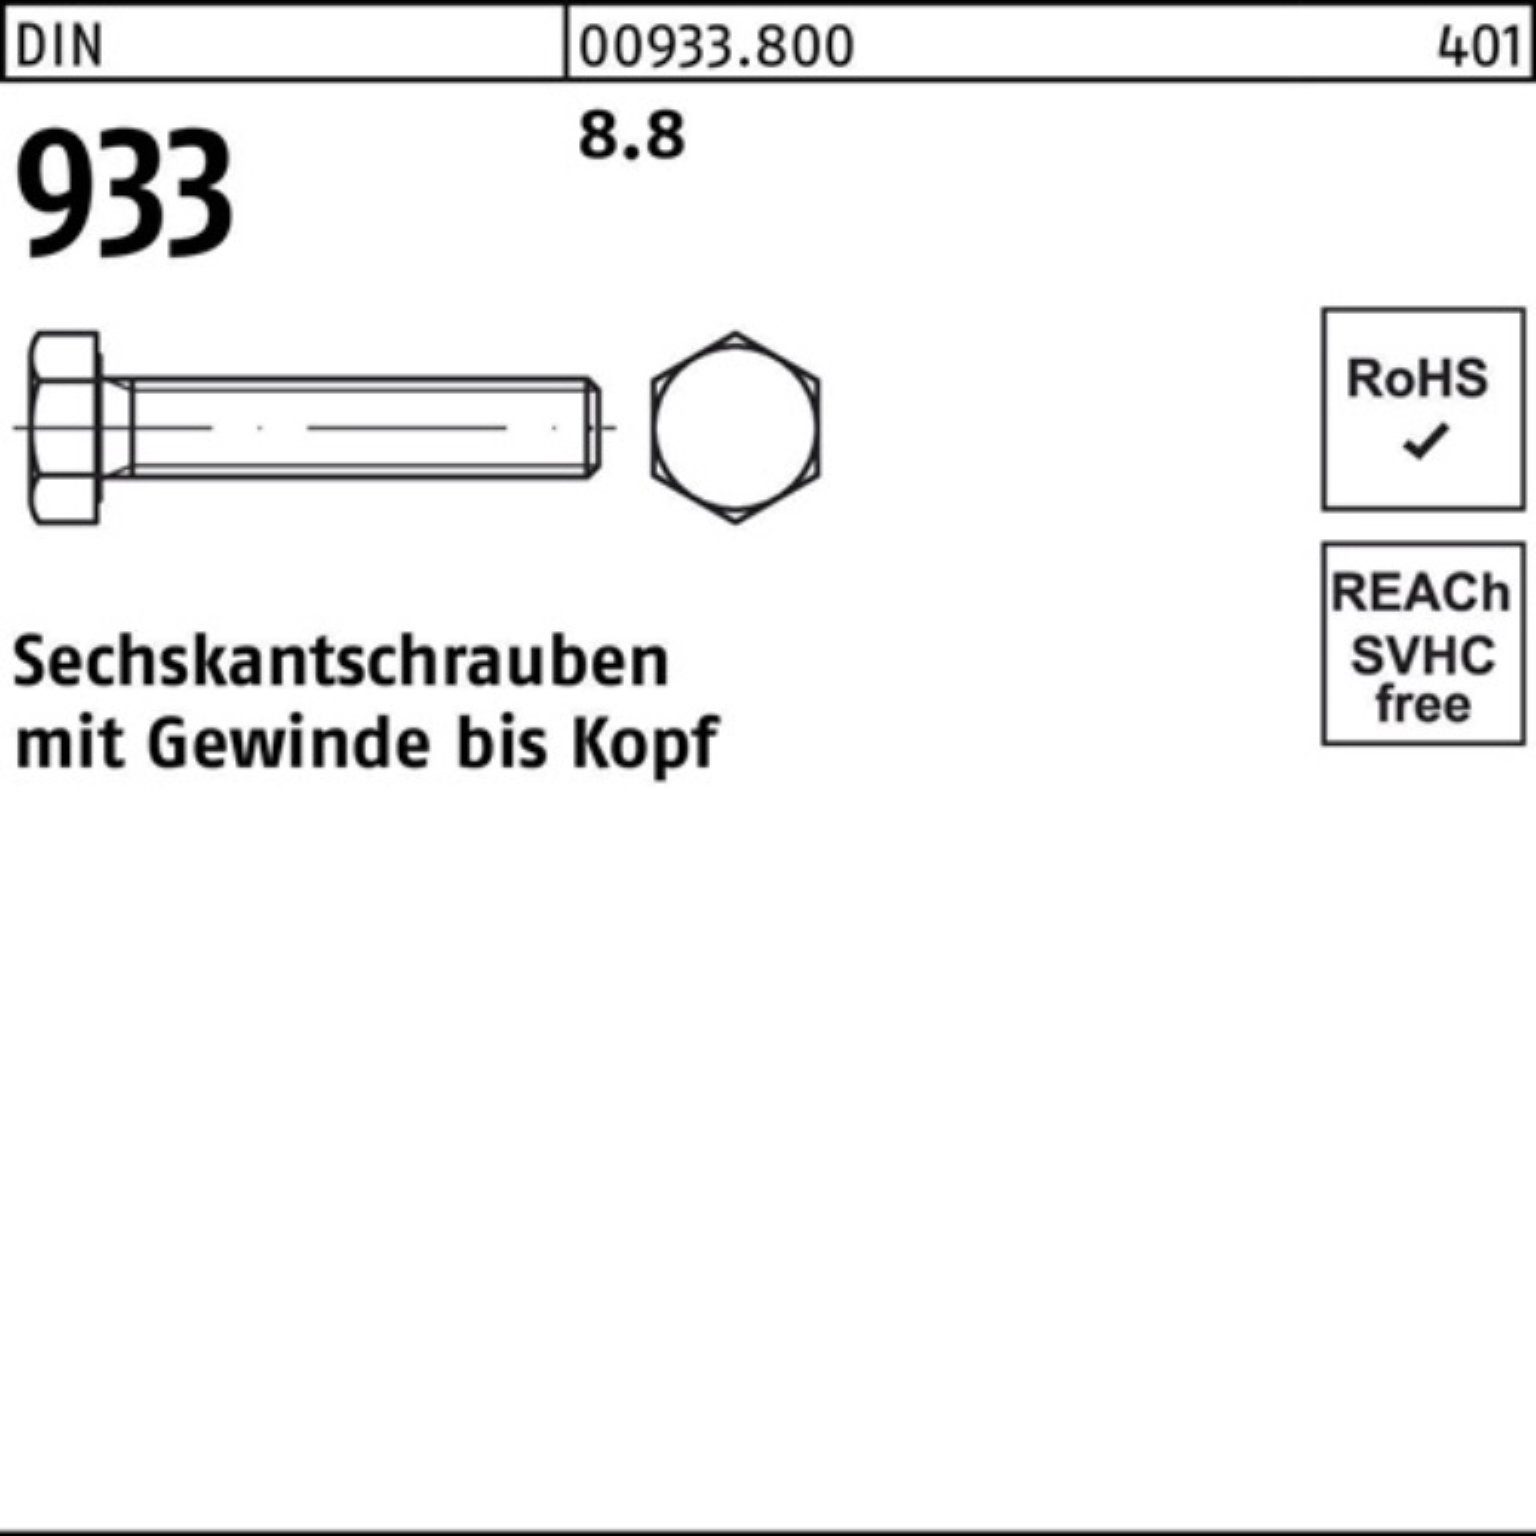 Sechskantschraube DIN Pack 933 Reyher 25 100er VG DIN Stück 200 933 Sechskantschraube 8.8 M12x